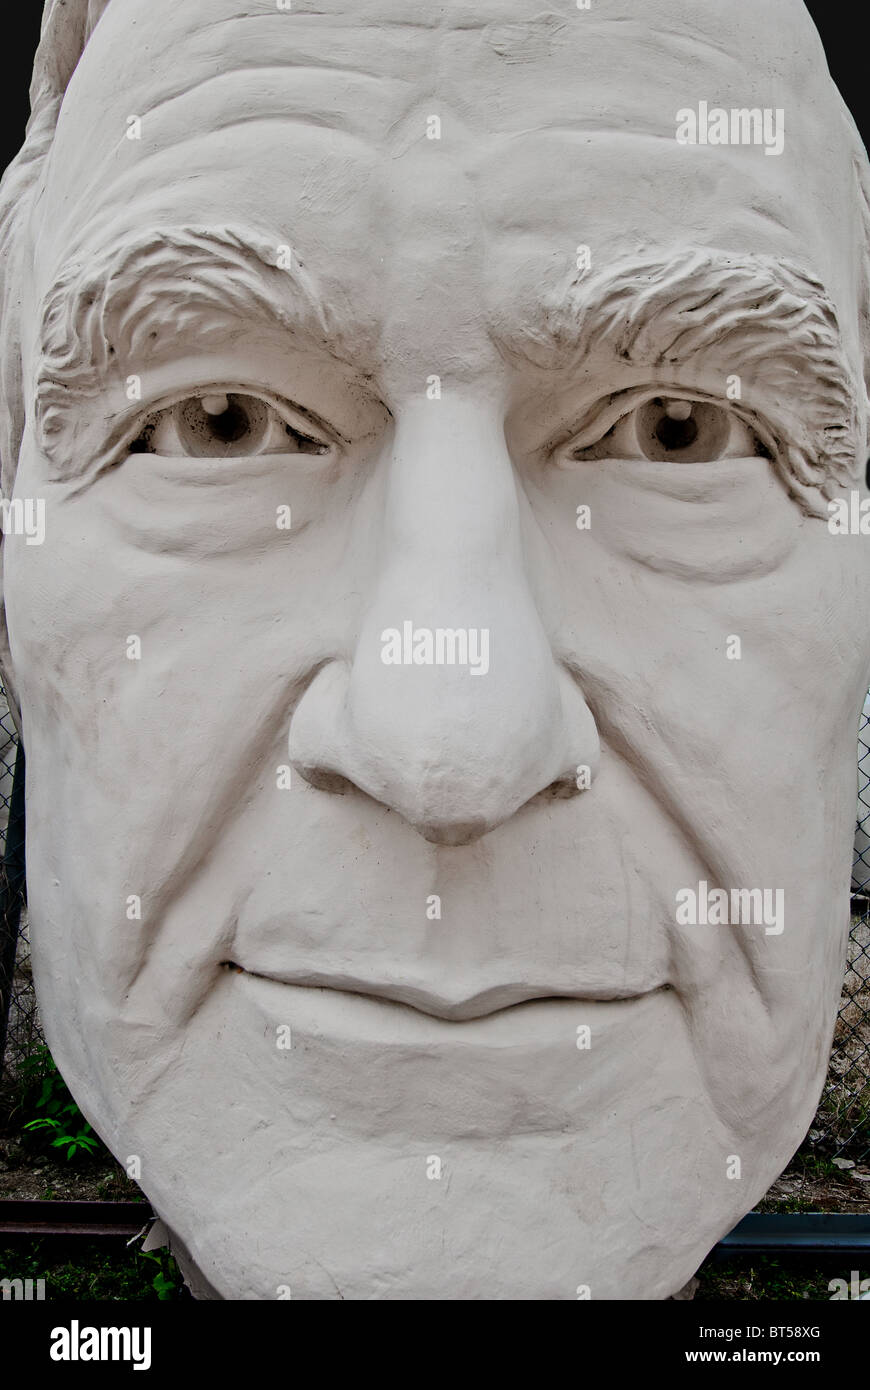 White concrete sculpture of George H. W. Bush (41st US President) at David Adickes Sculpturworx Studio in Houston, Texas, USA Stock Photo